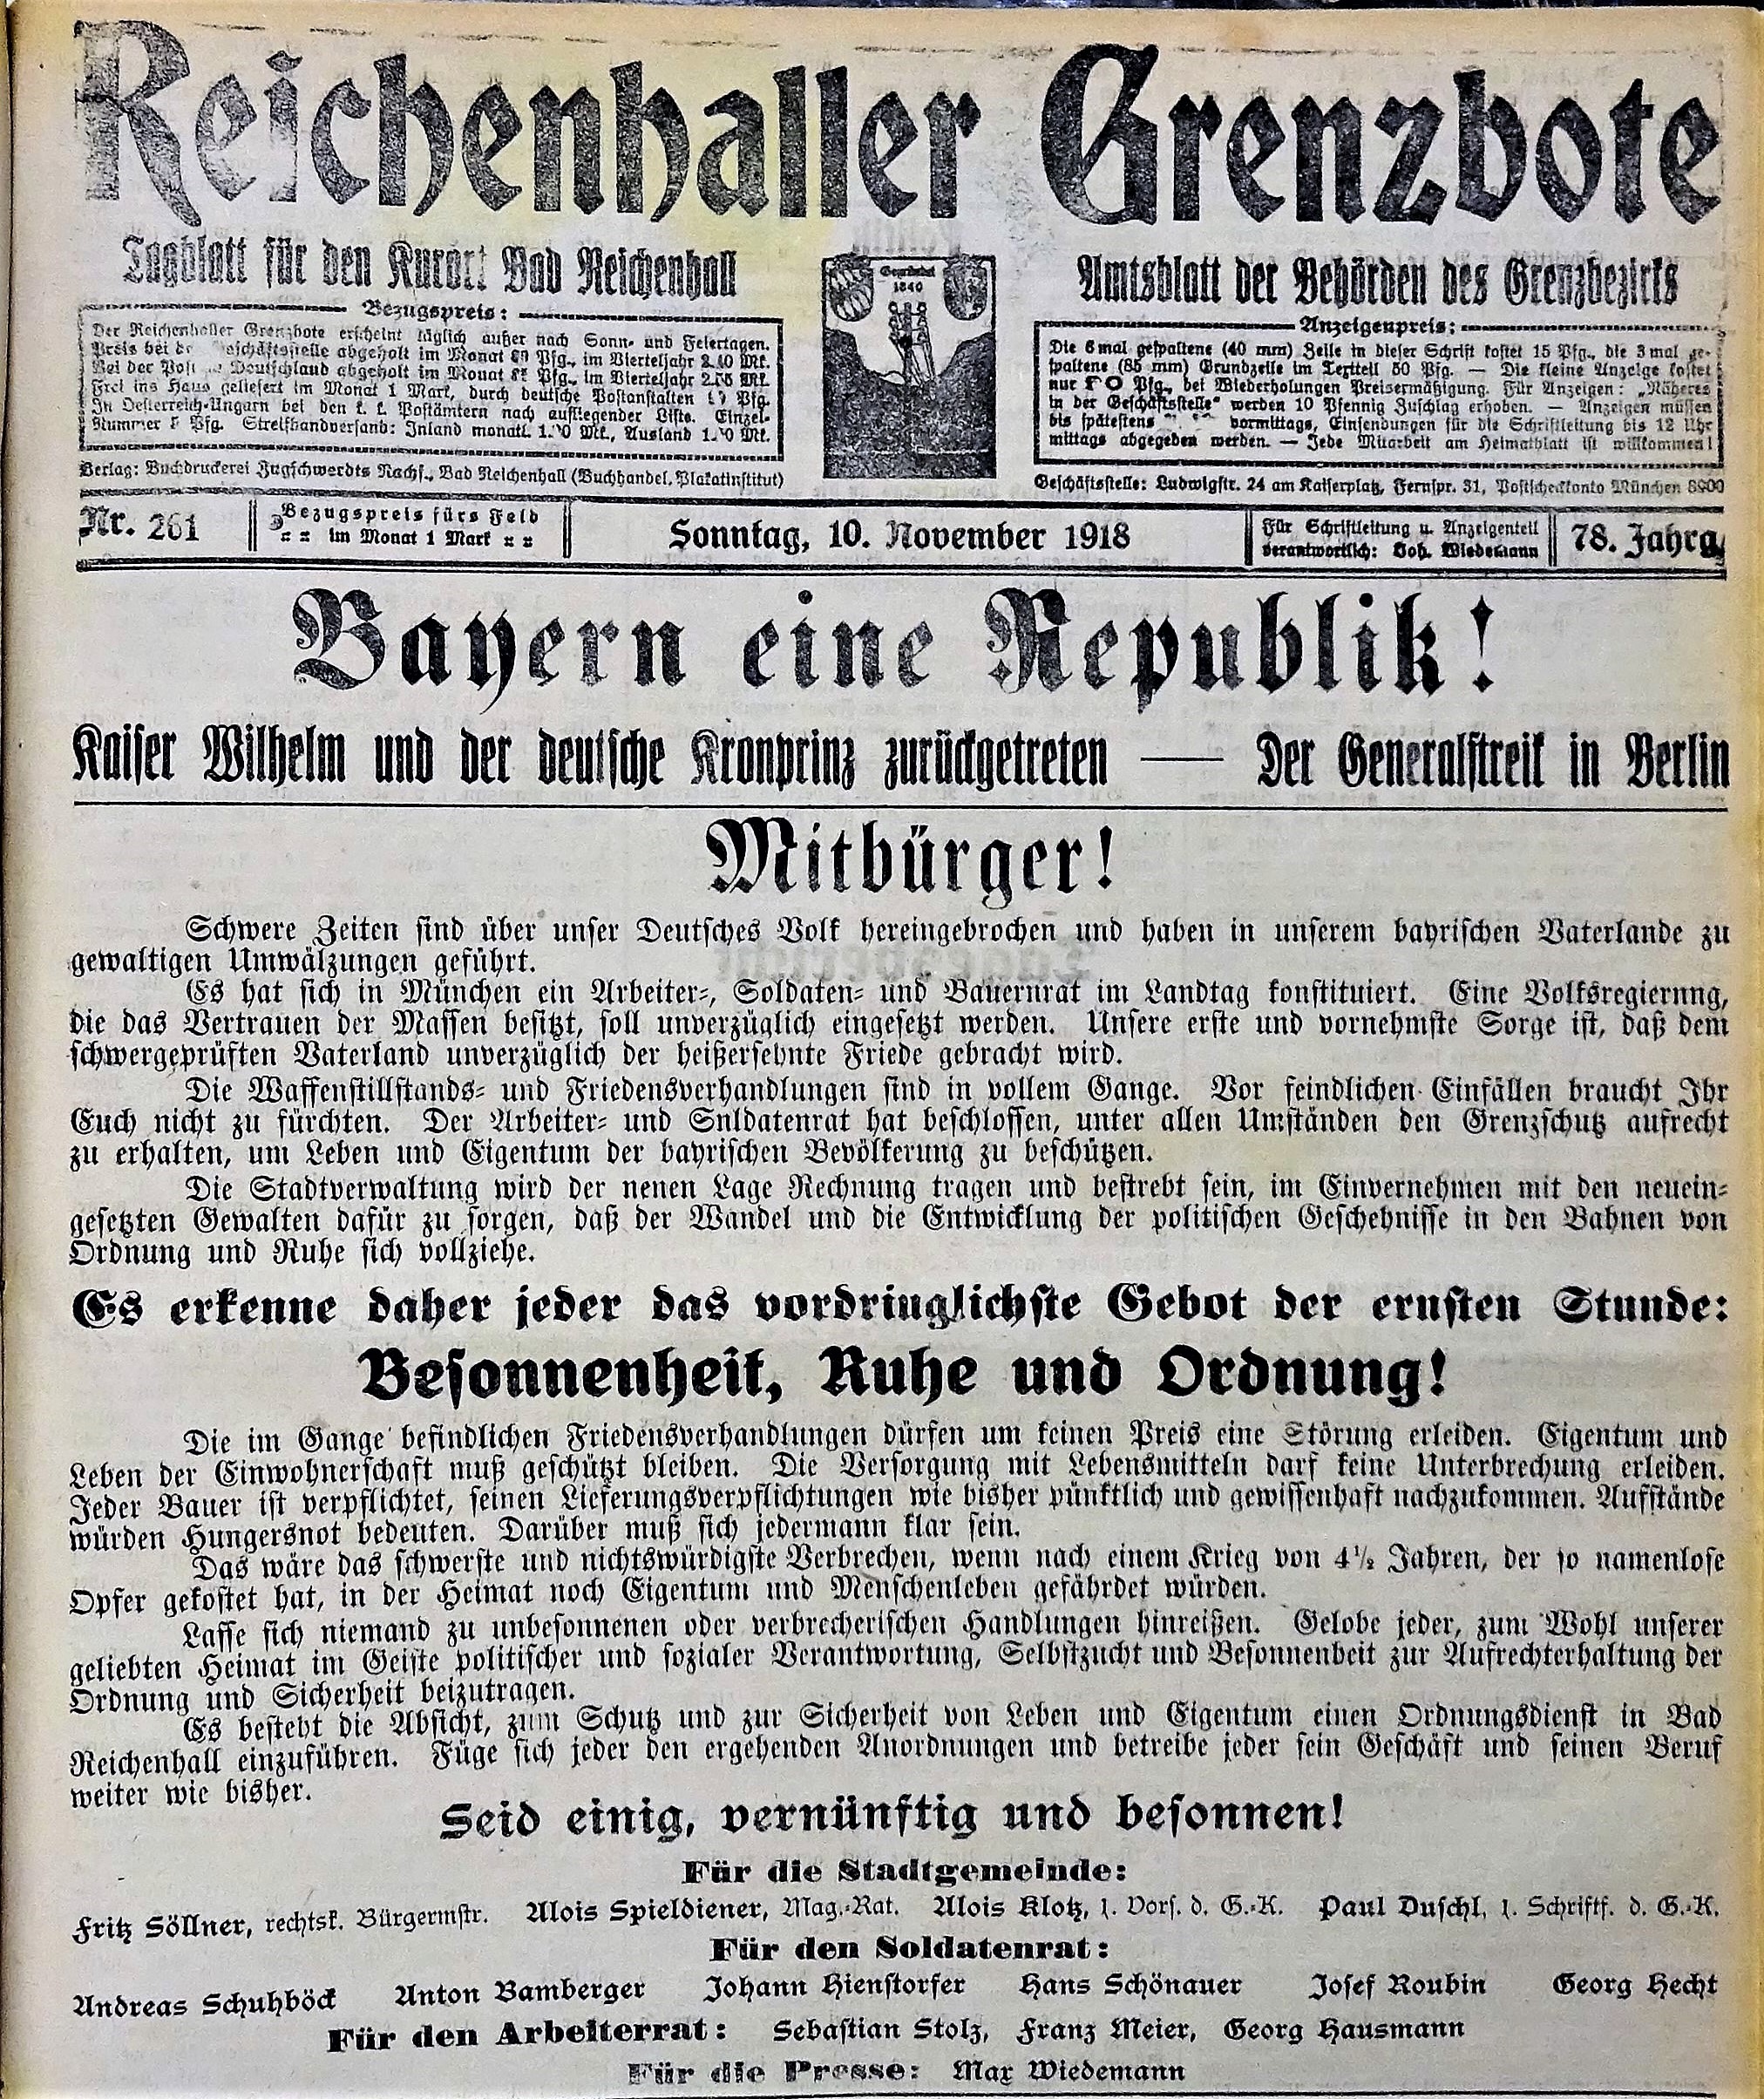 Titel des Reichenhaller Grenzboten vom 10. November 1918